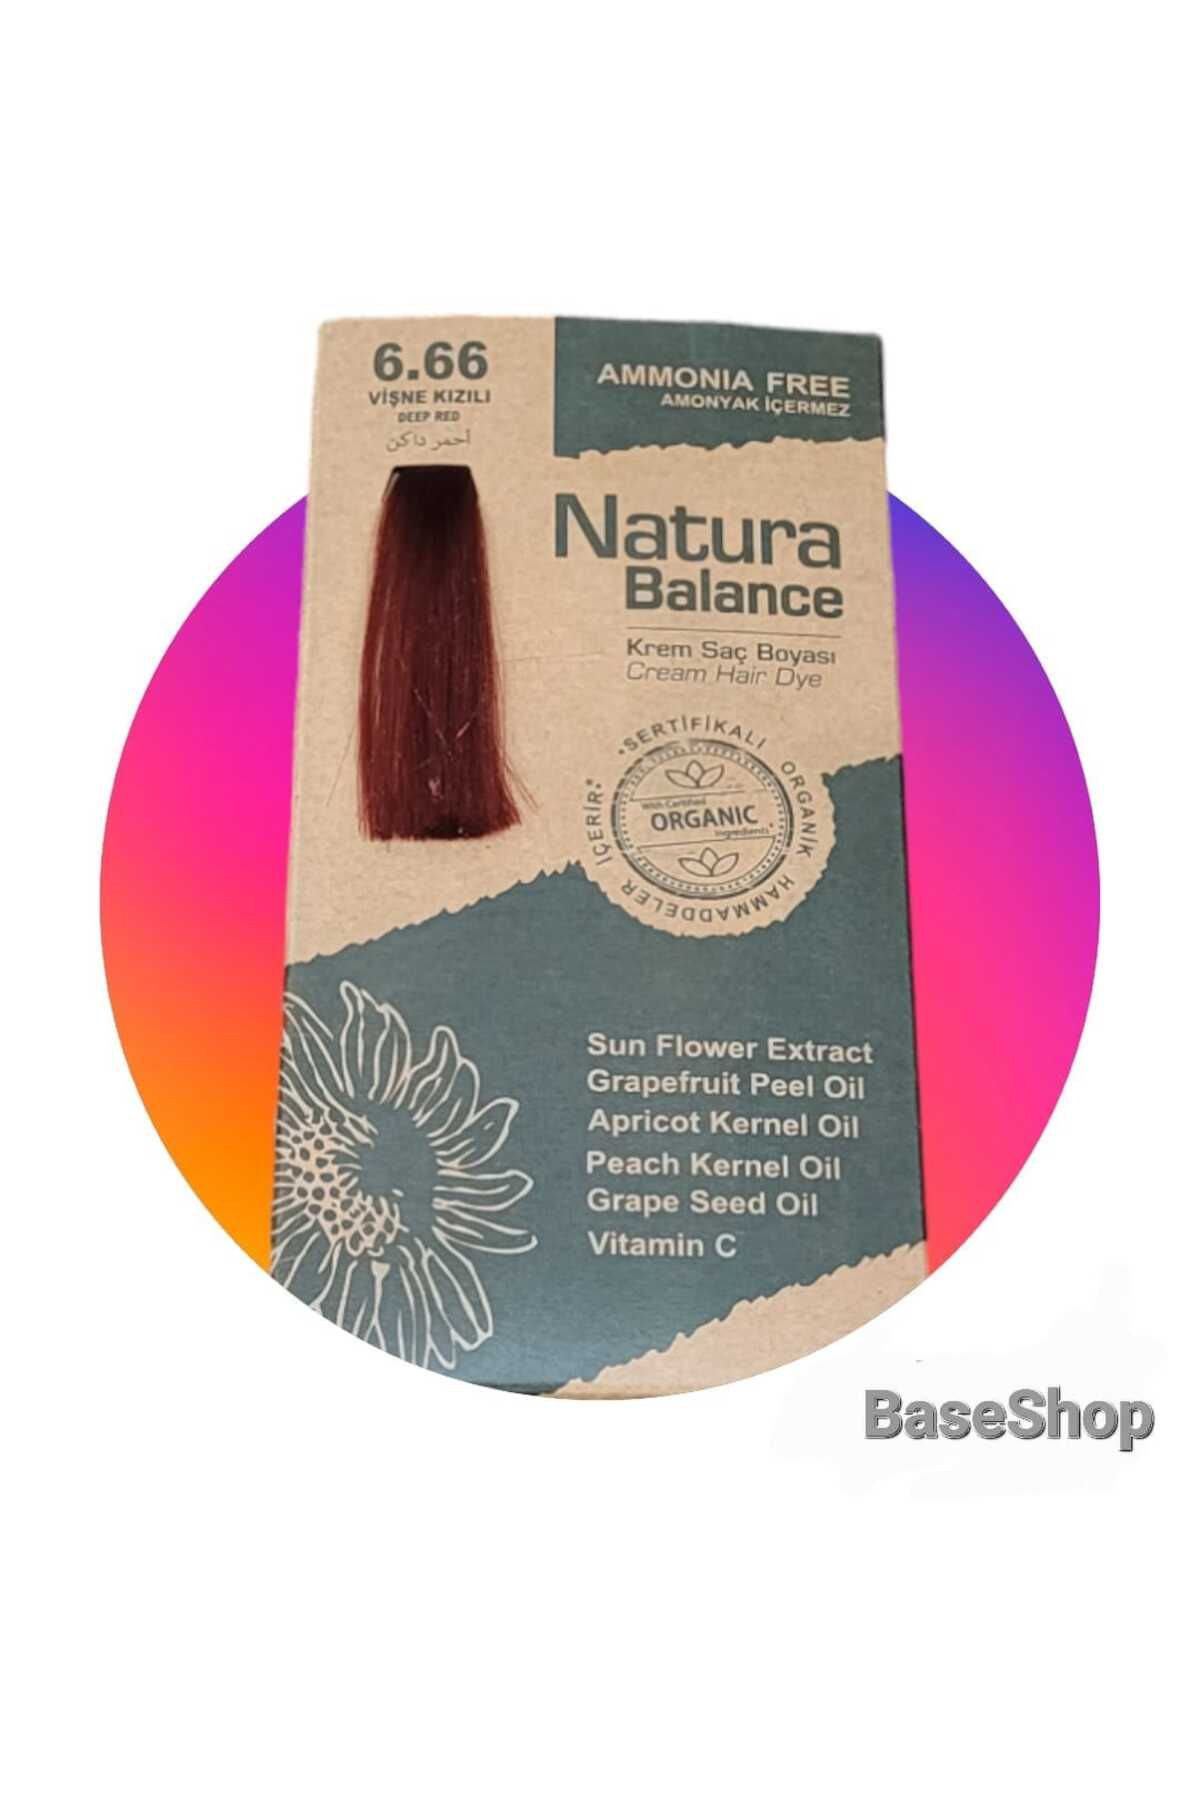 NATURABALANCE Natura Balance Amonyaksız Saç Boyası 6.66 Vişne Kızılı